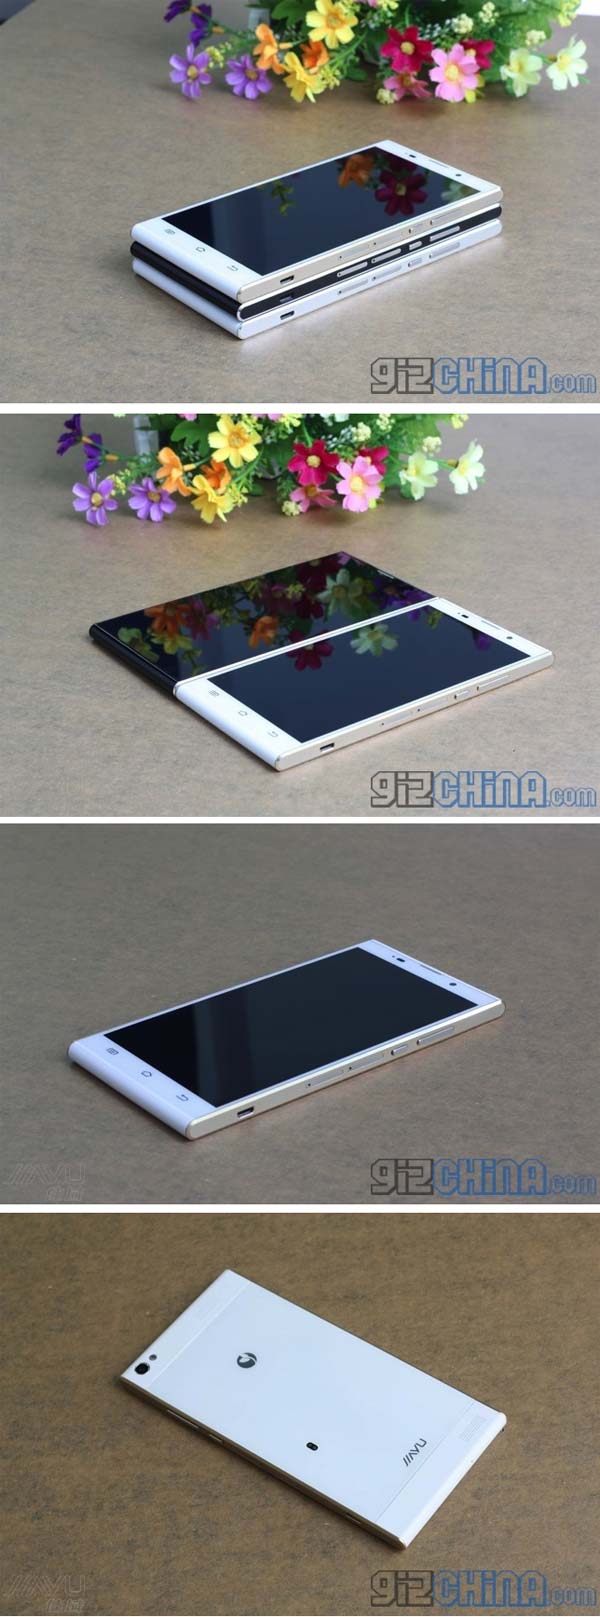 Новые фото планшетофона Jiayu G6